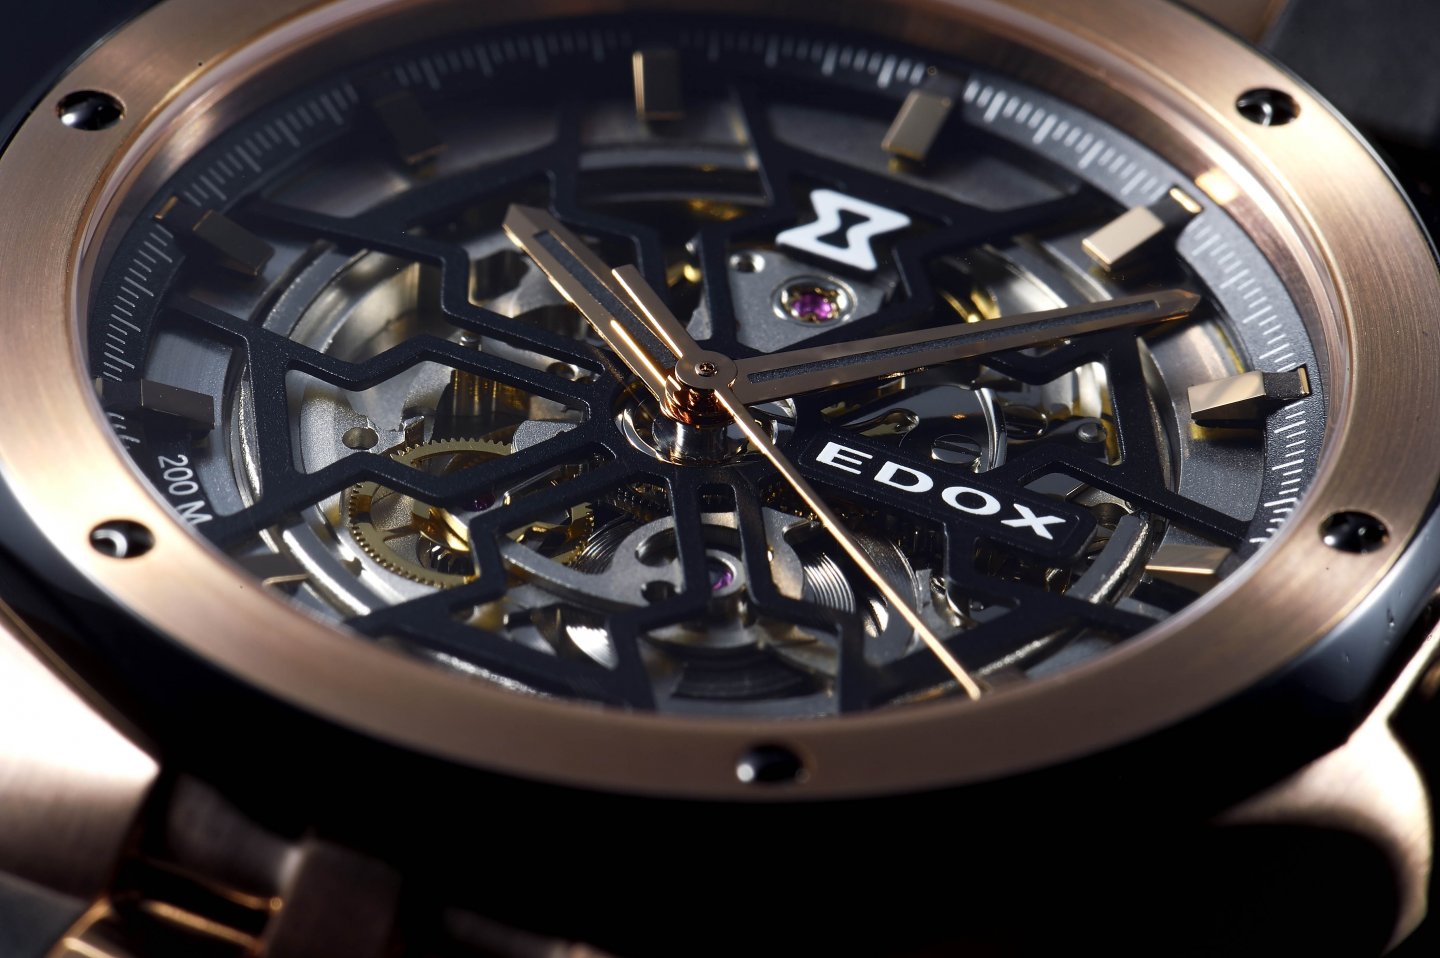 エドックス、アワーグラスをモチーフにしたカットワークで魅せる時計『デルフィン メカノ オートマティック』～新作4モデルを販売開始